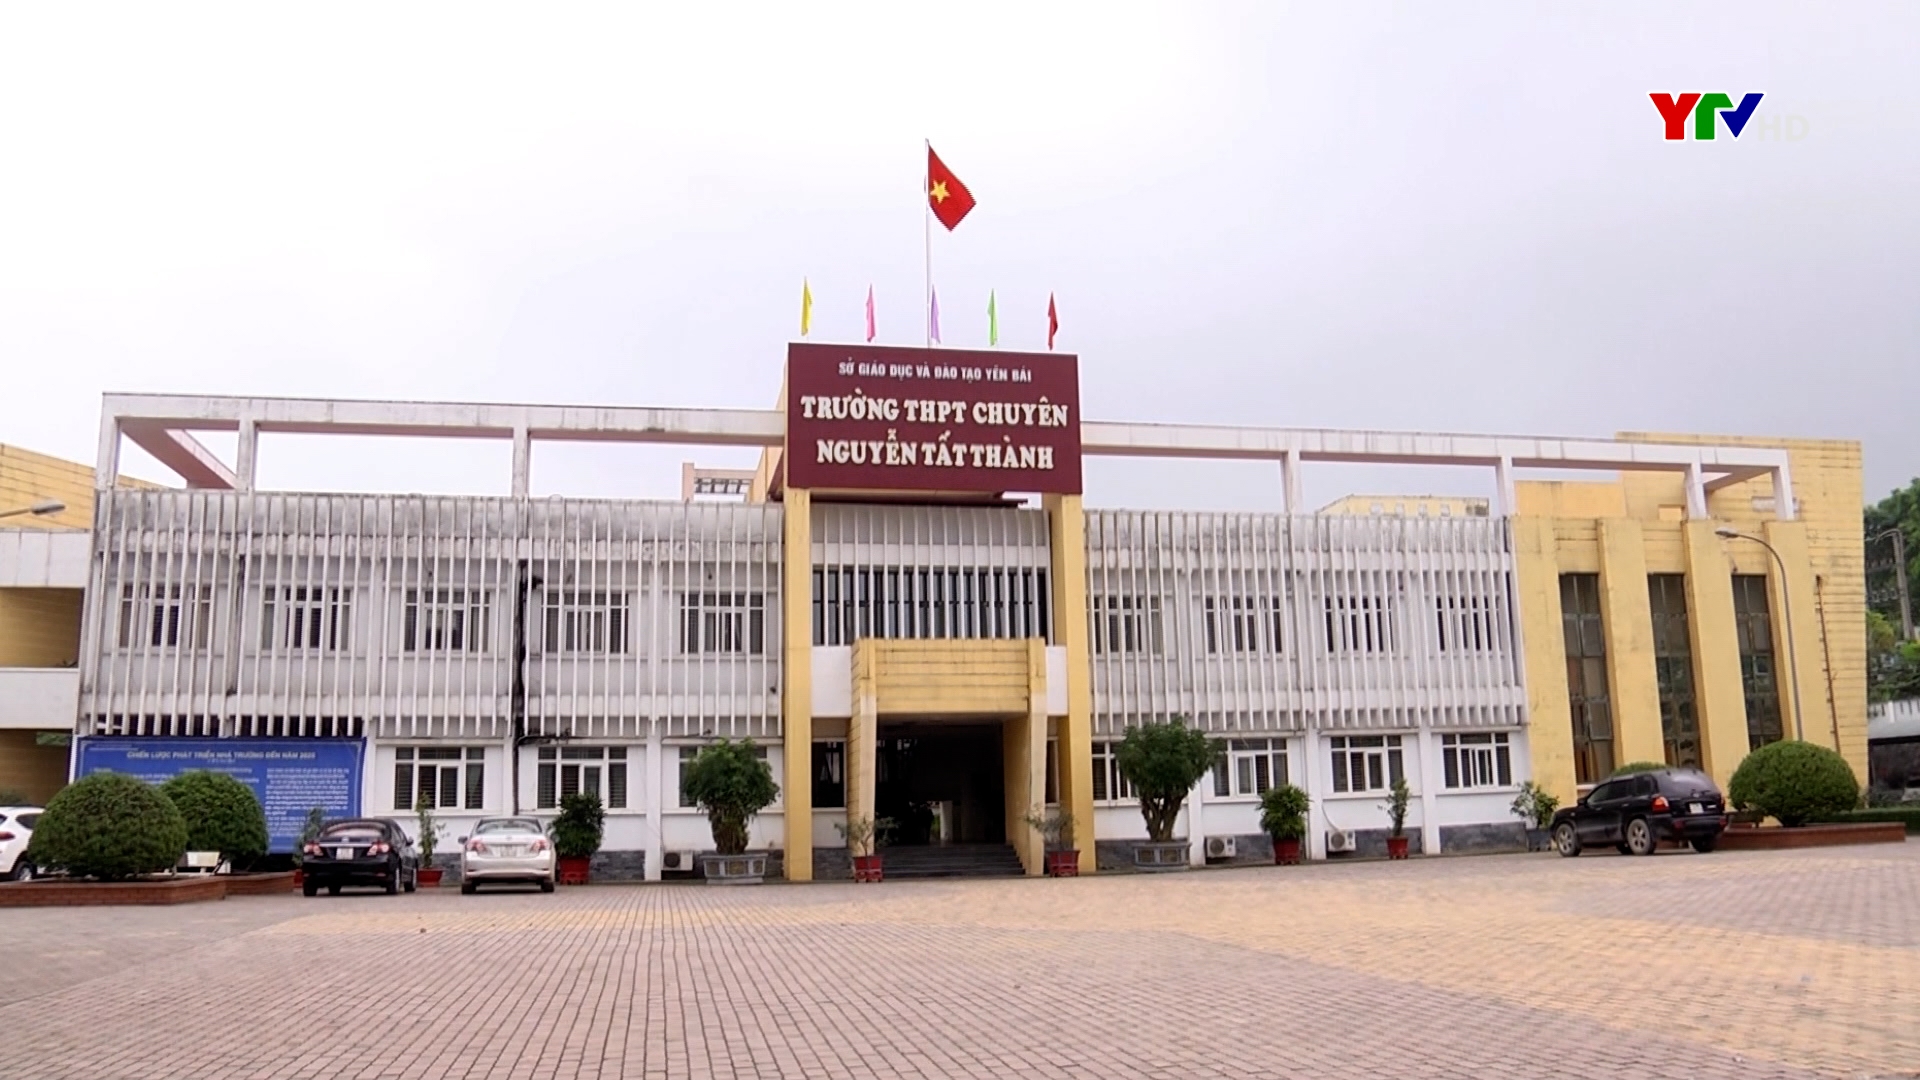 Năm học 2021 - 2022, Trường THPT Chuyên Nguyễn Tất Thành sẽ tuyển sinh vào lớp 6